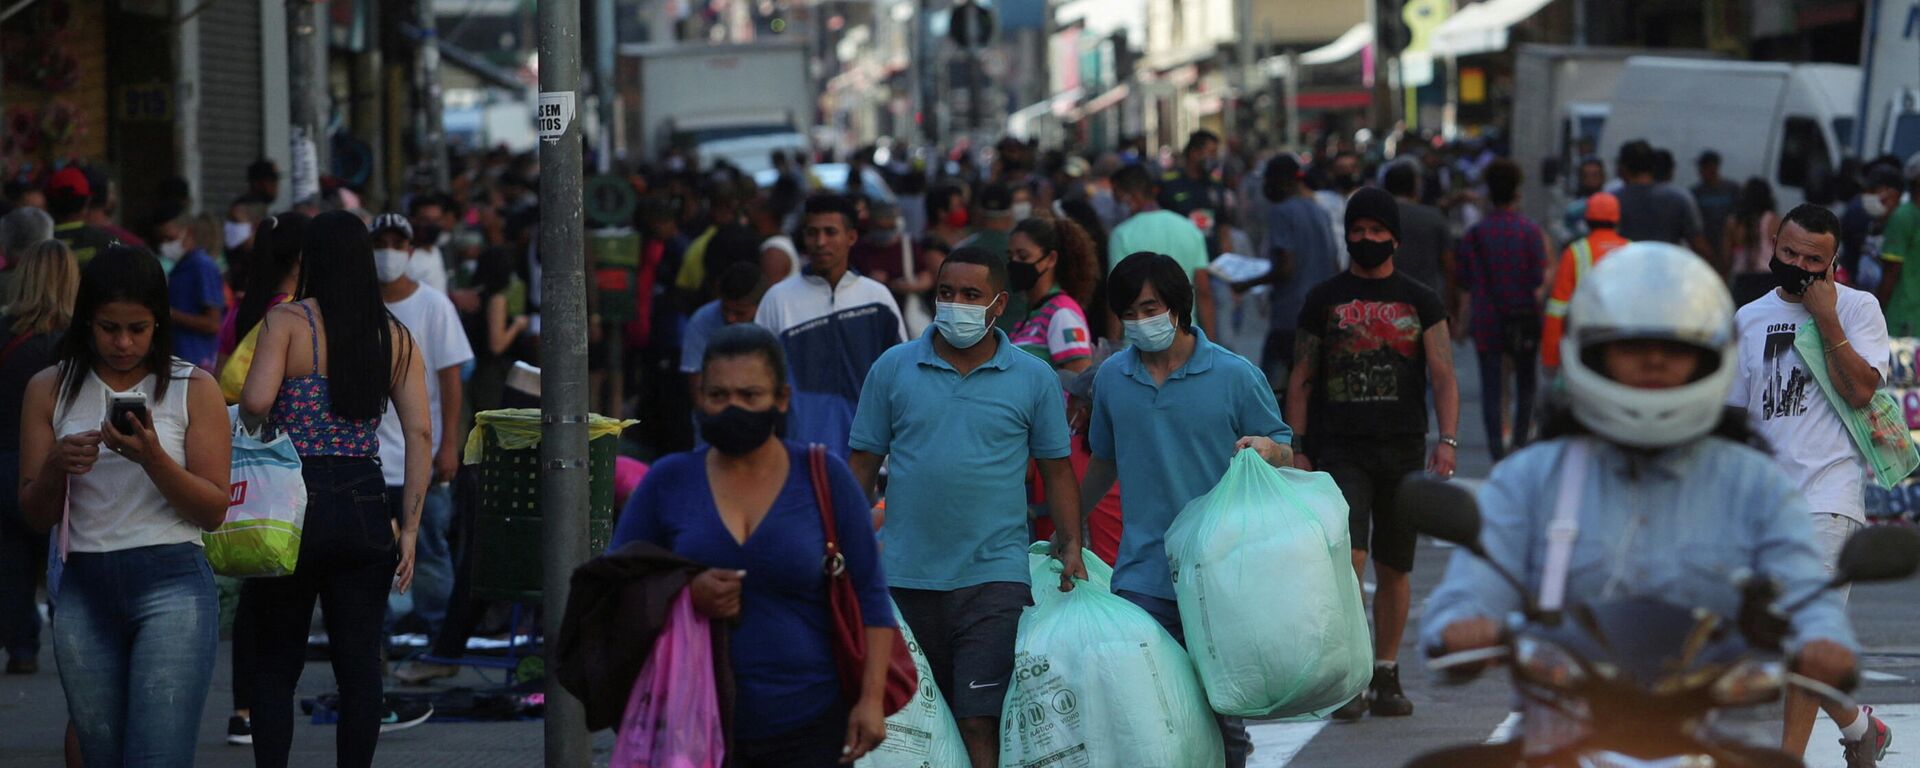 Pessoas caminham em rua comercial popular em meio à pandemia de COVID-19, em São Paulo, no Brasil, em 19 de junho de 2020 - Sputnik Brasil, 1920, 29.12.2021